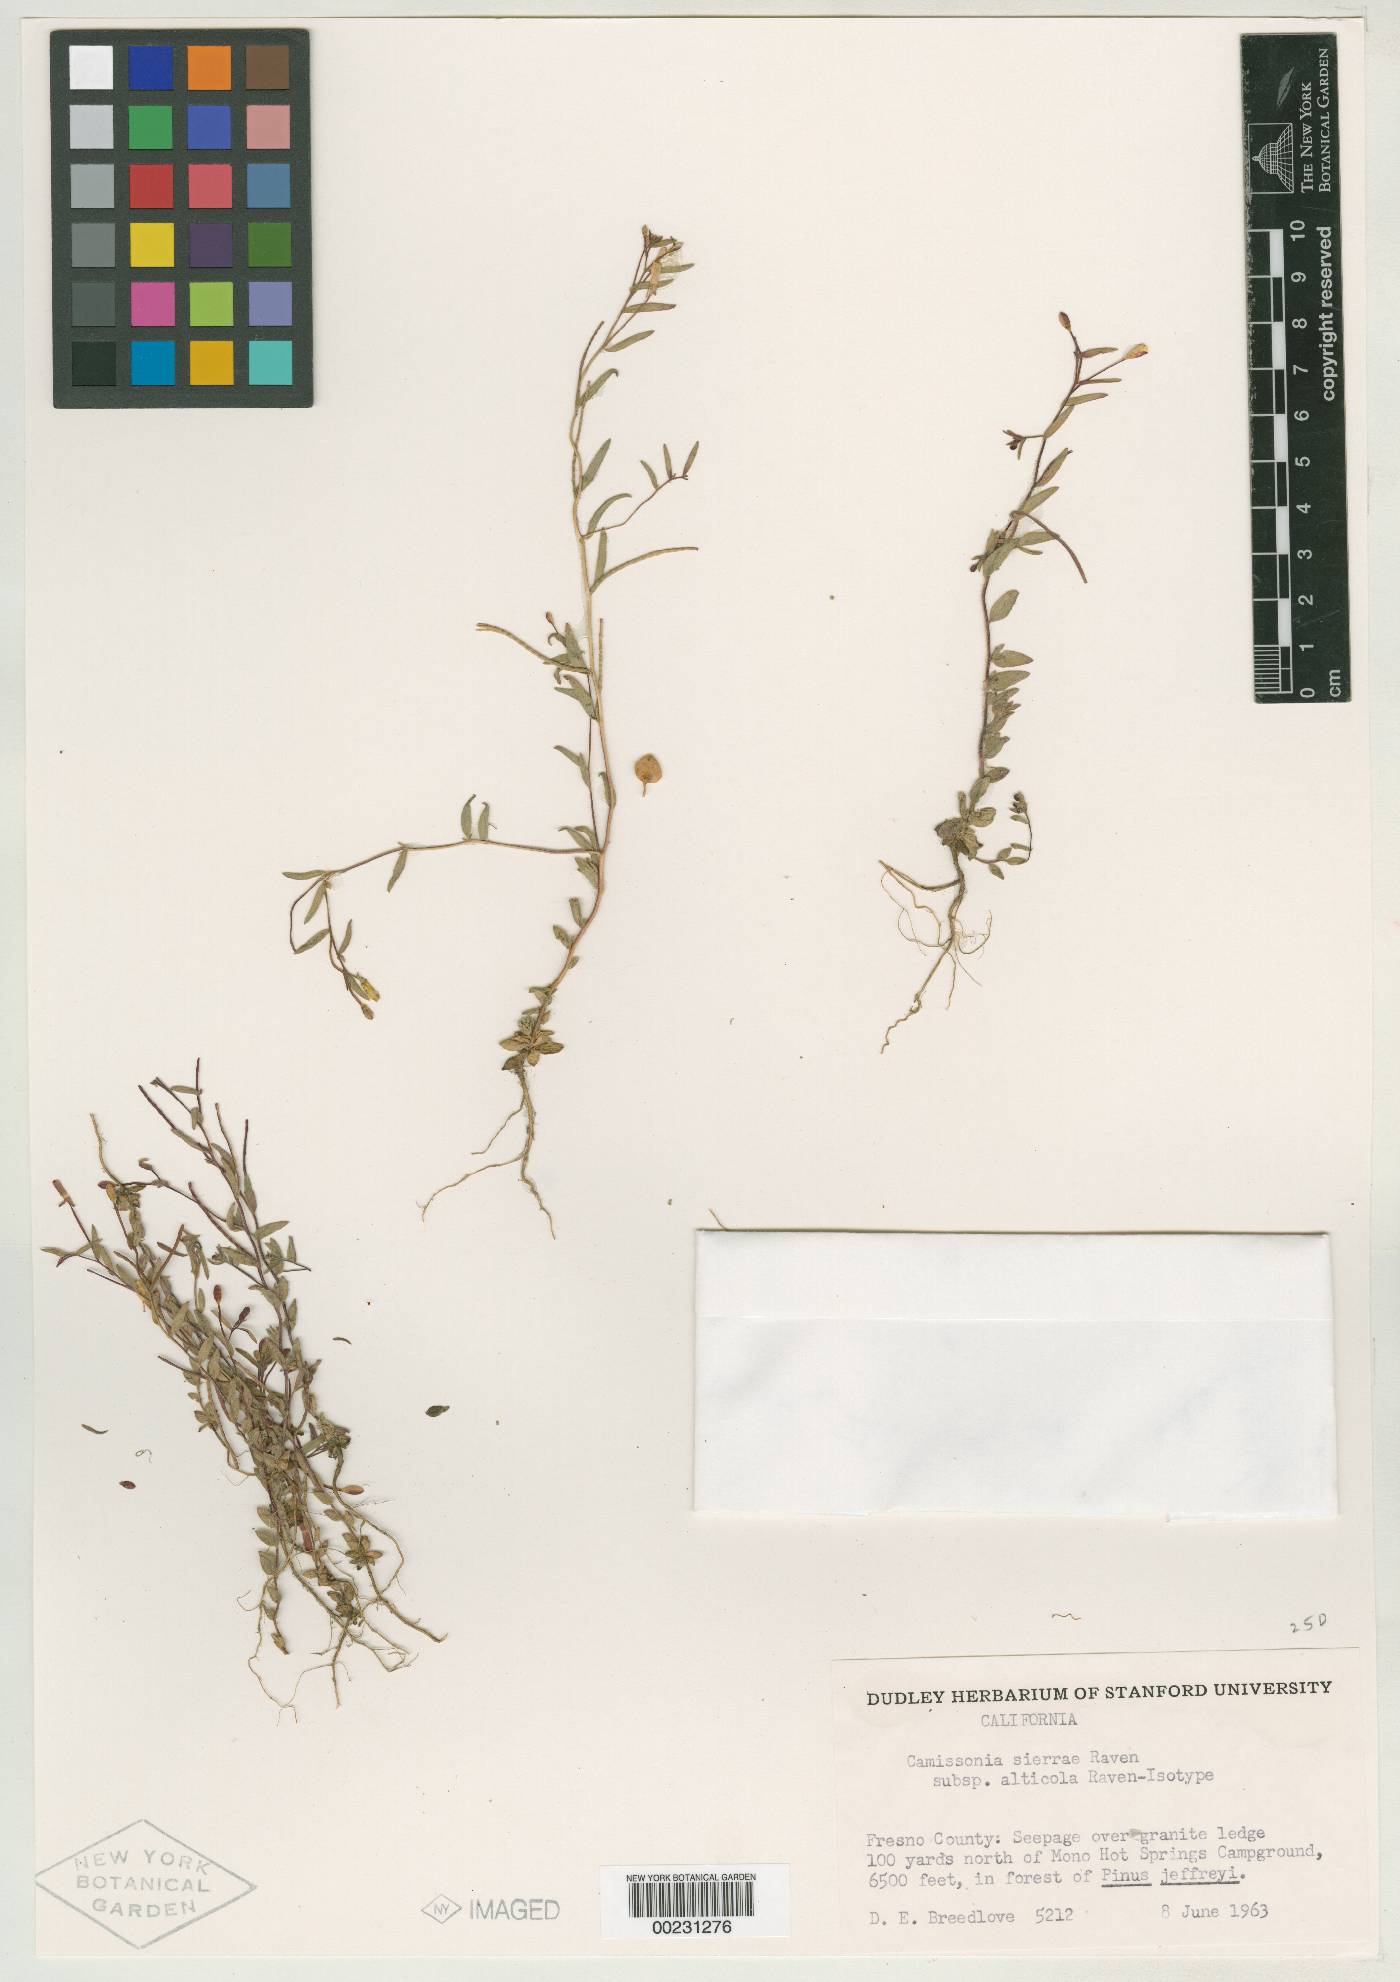 Camissonia sierrae subsp. alticola image